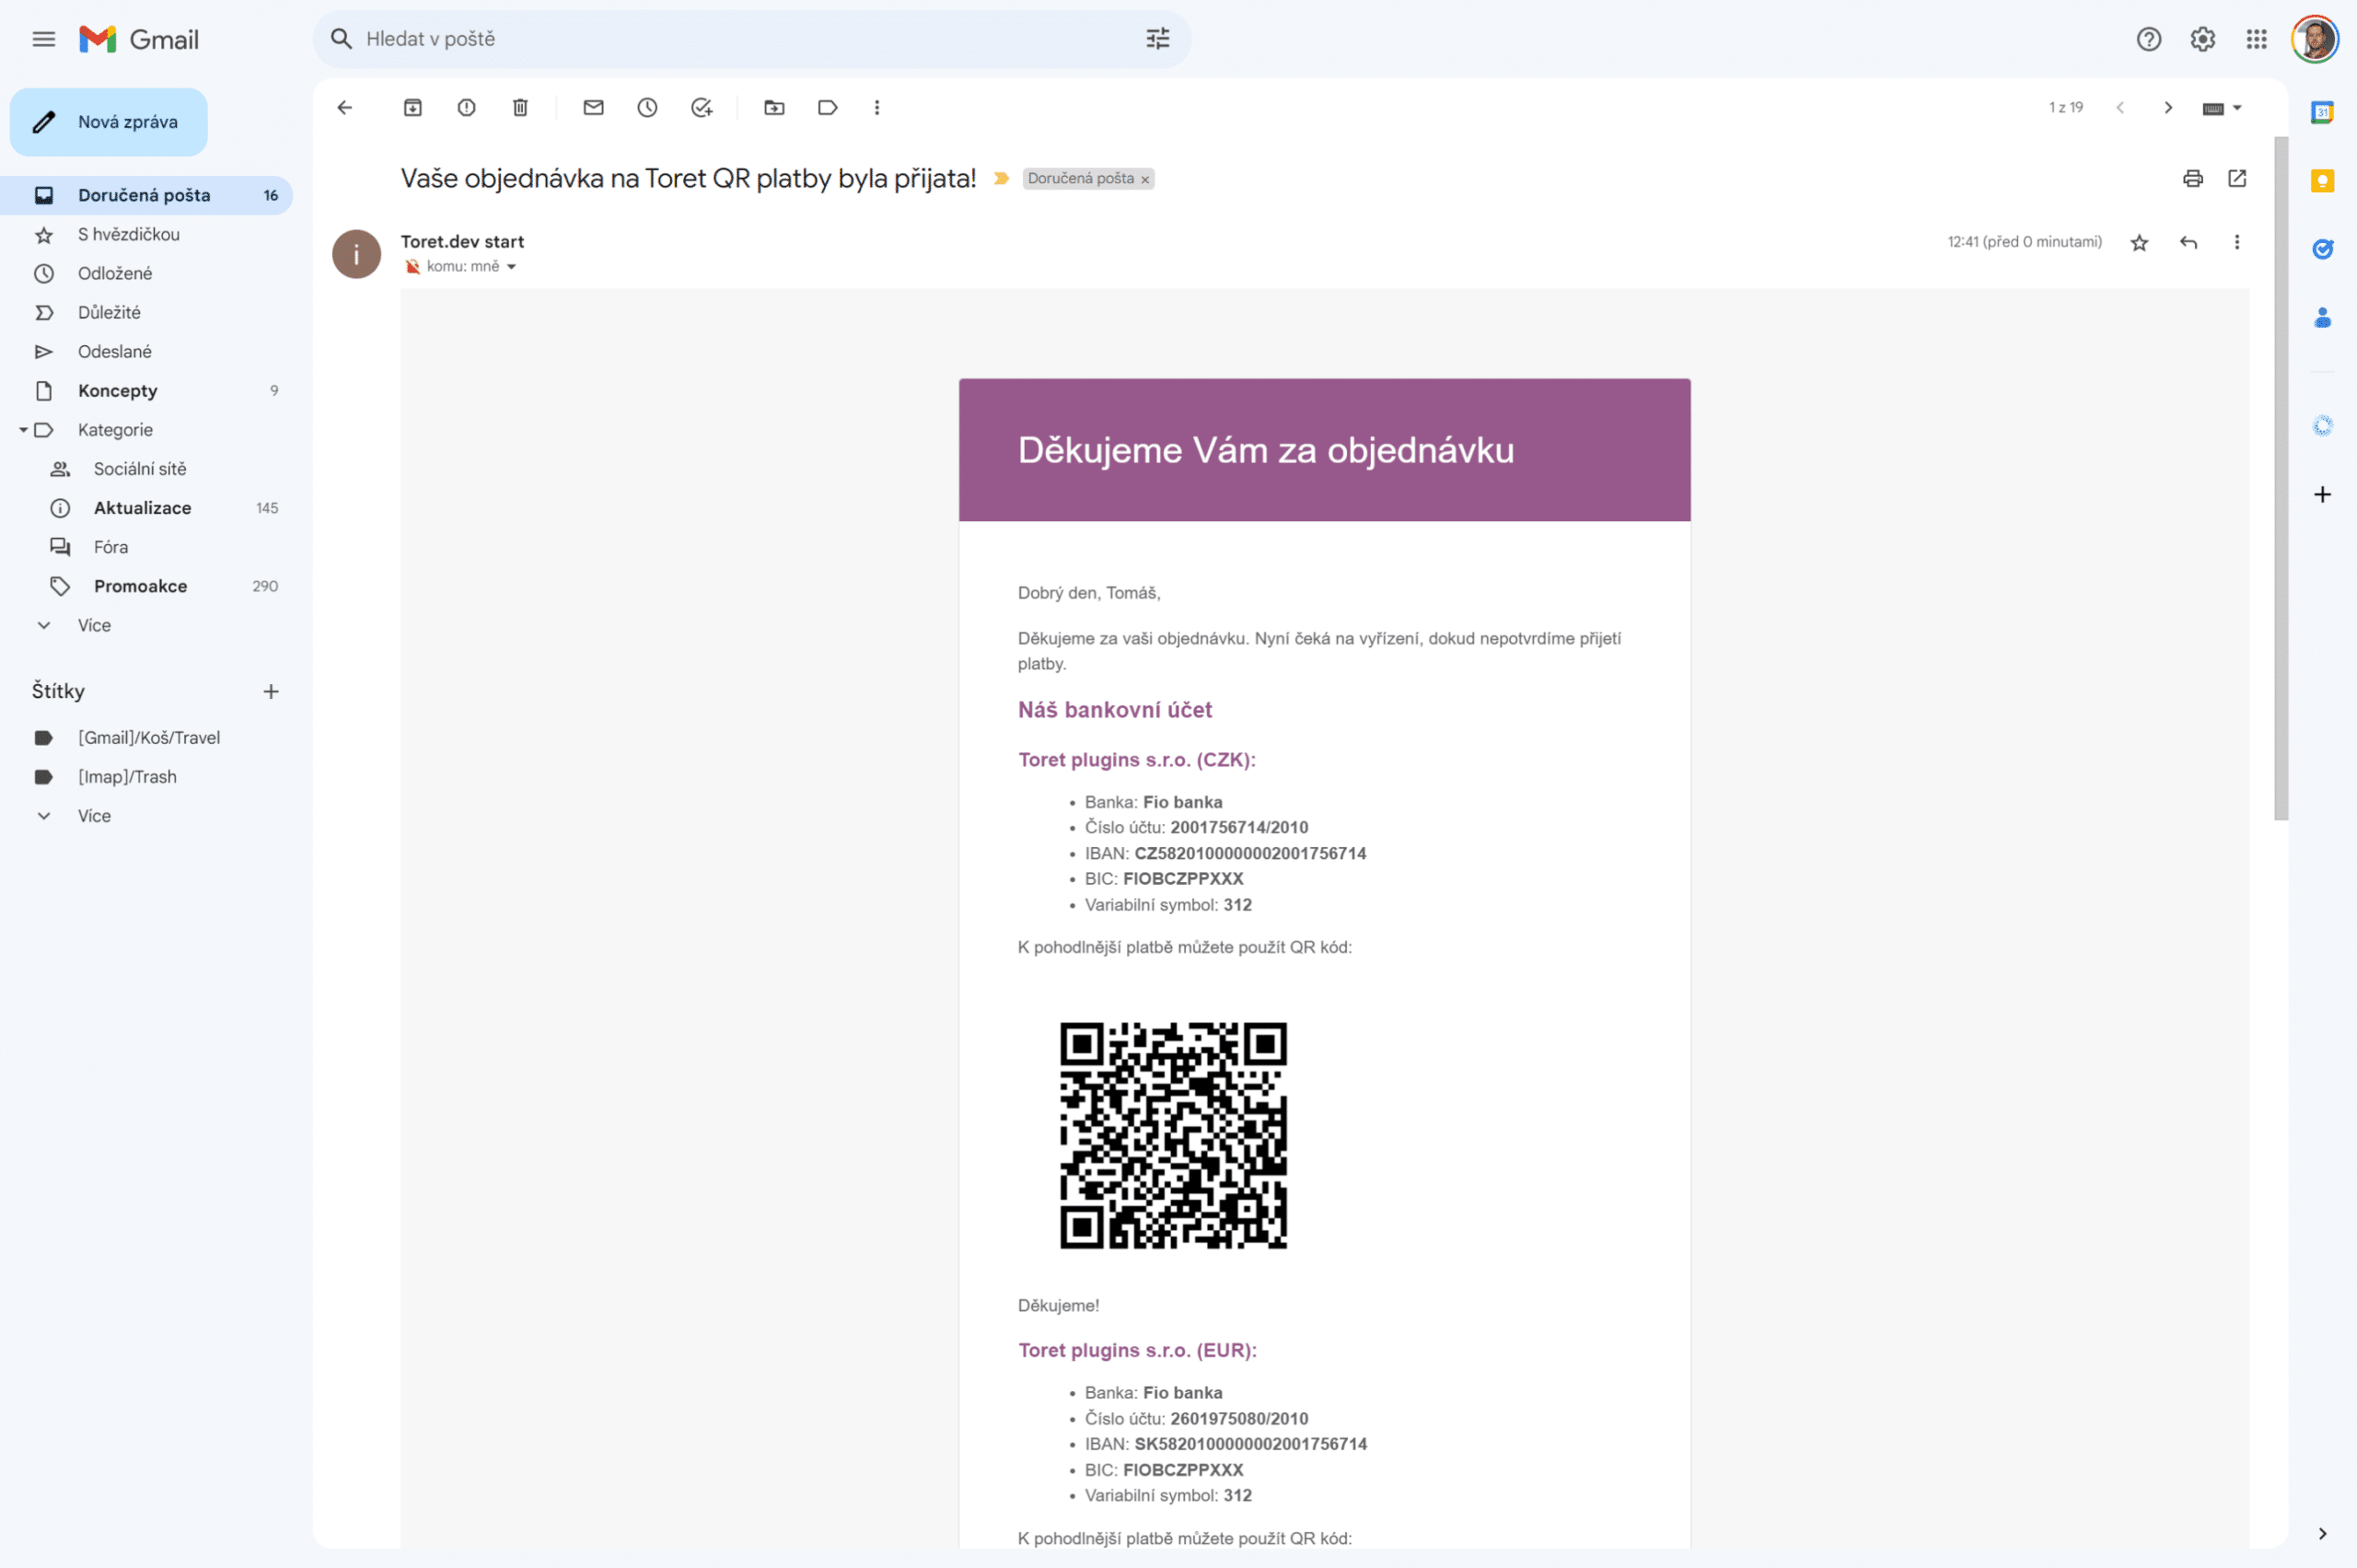 QR kód pro zaplacení v e-mailu o objednávce.